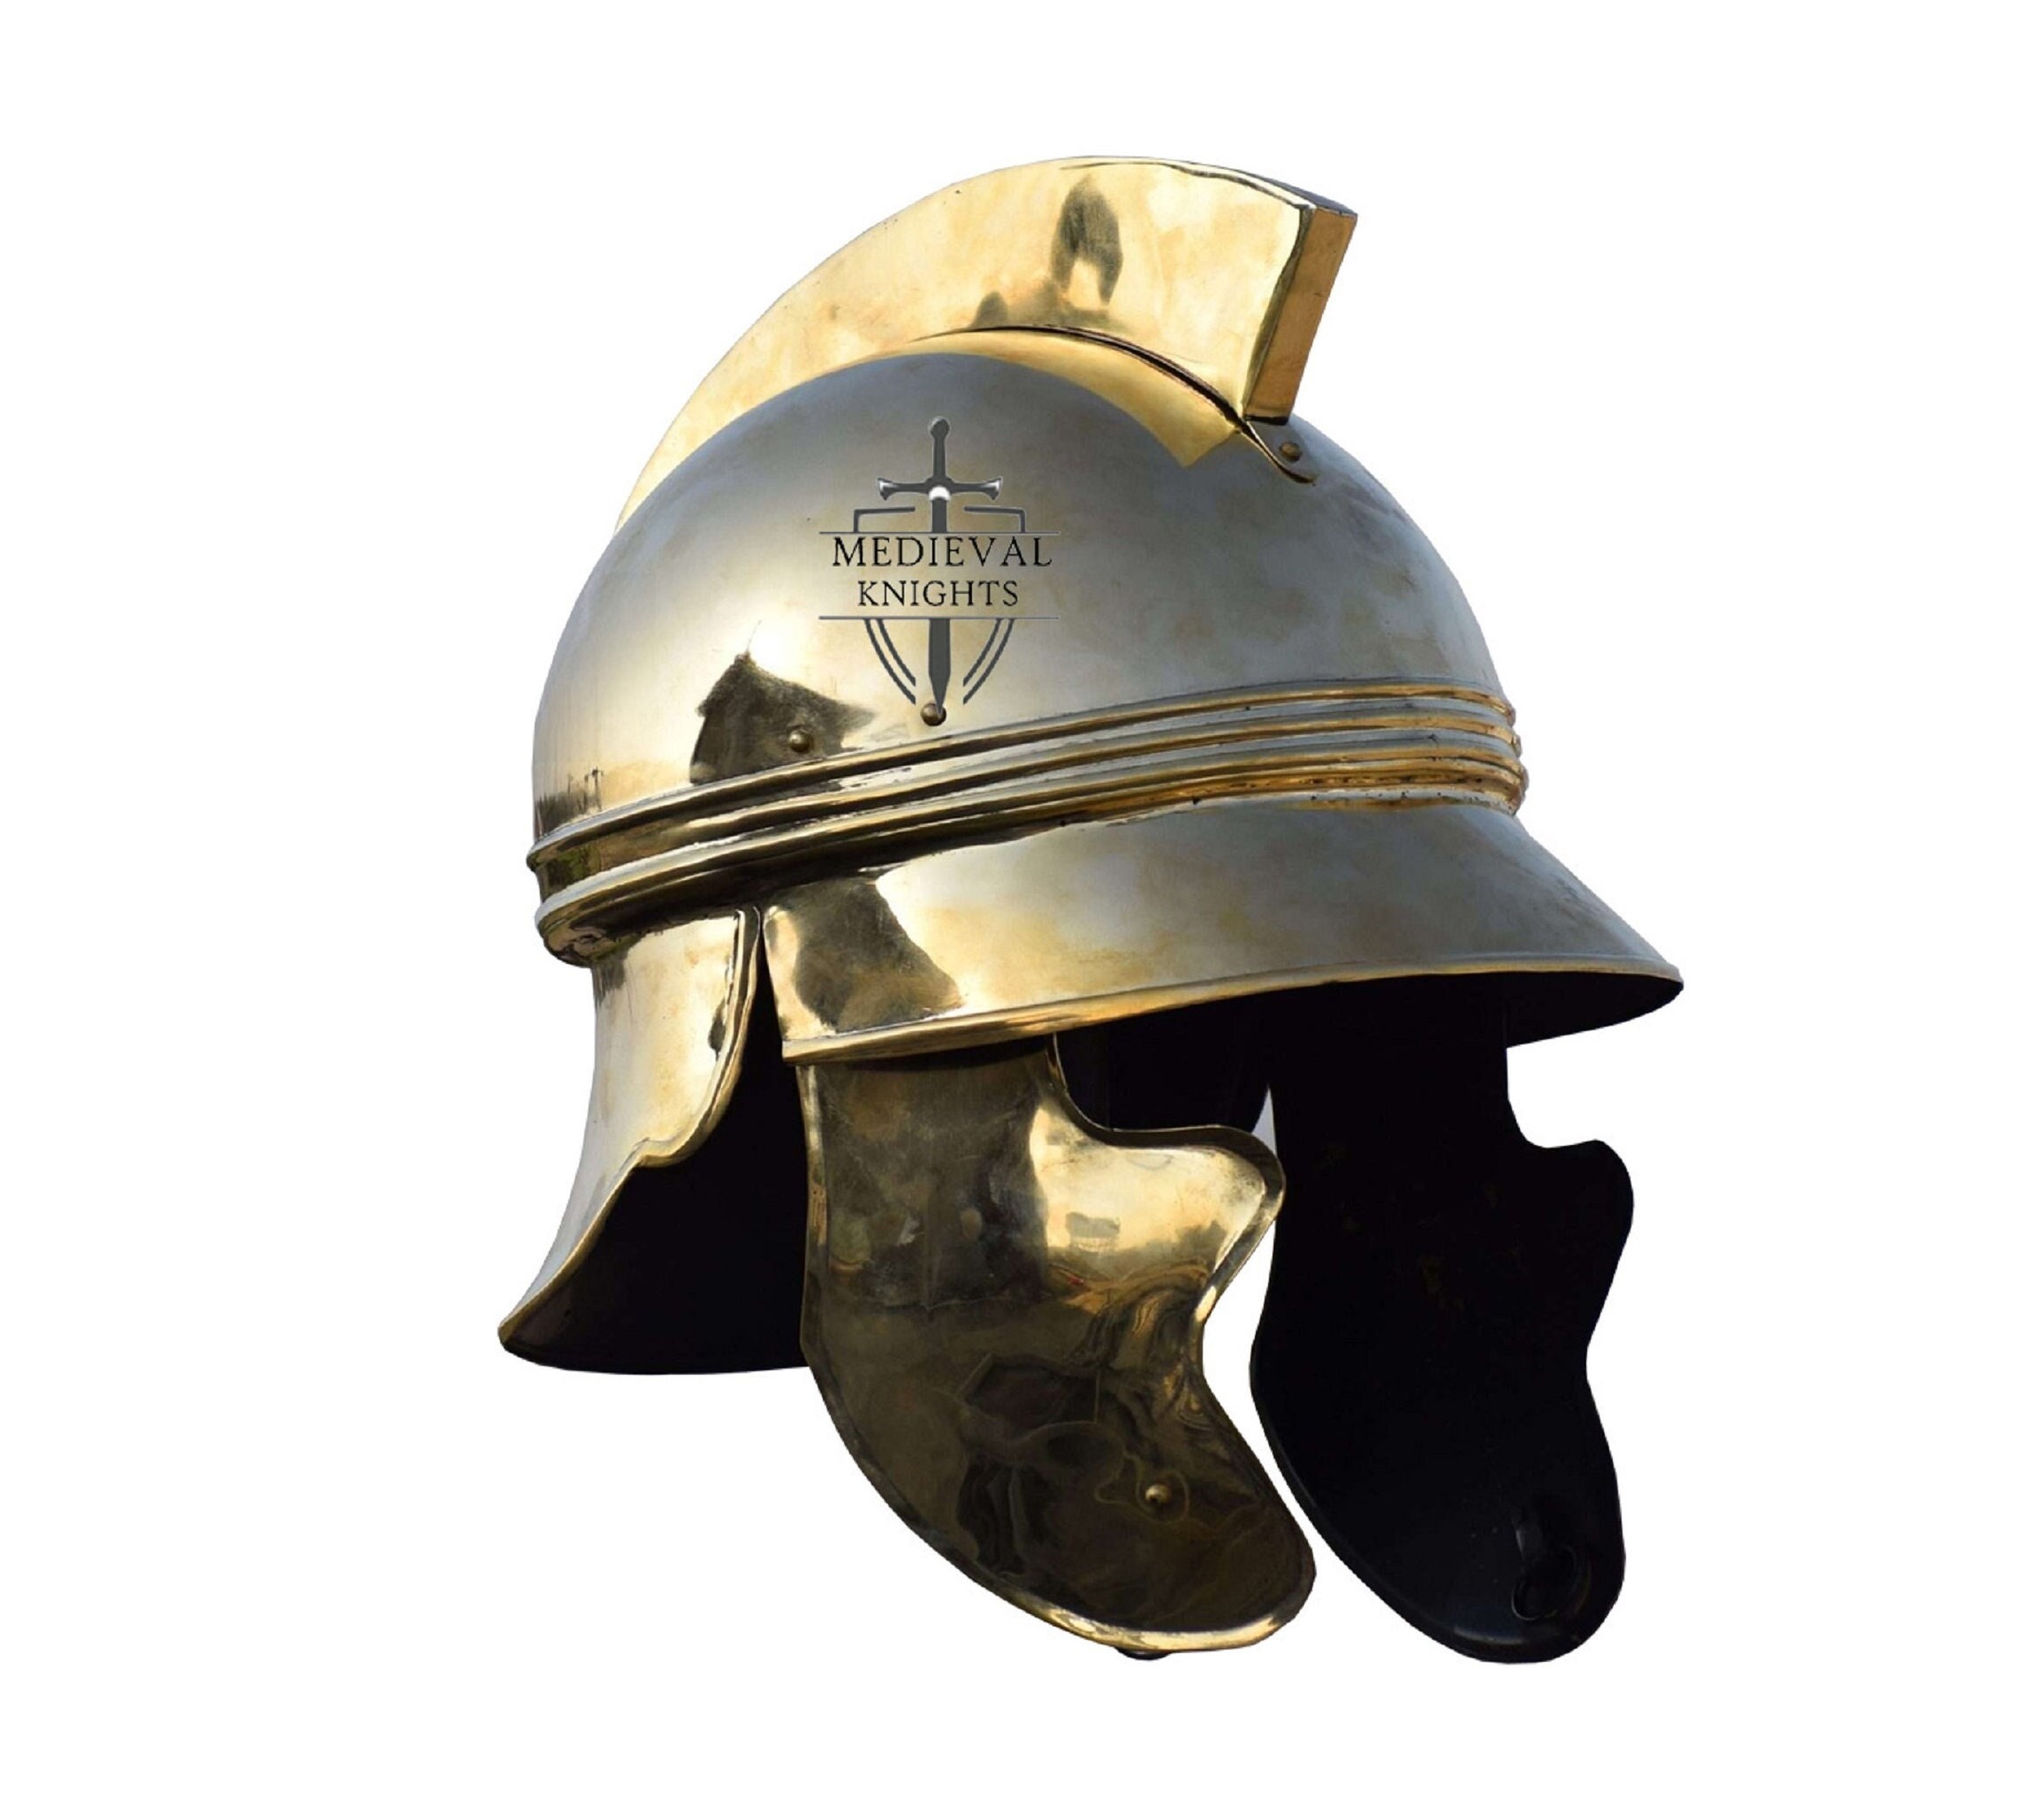 Casco de armadura de guerrero medieval griego corintio con plumas y pelos |  Forro de cuero | Disfraz de caballero guerrero troyano romano espartano